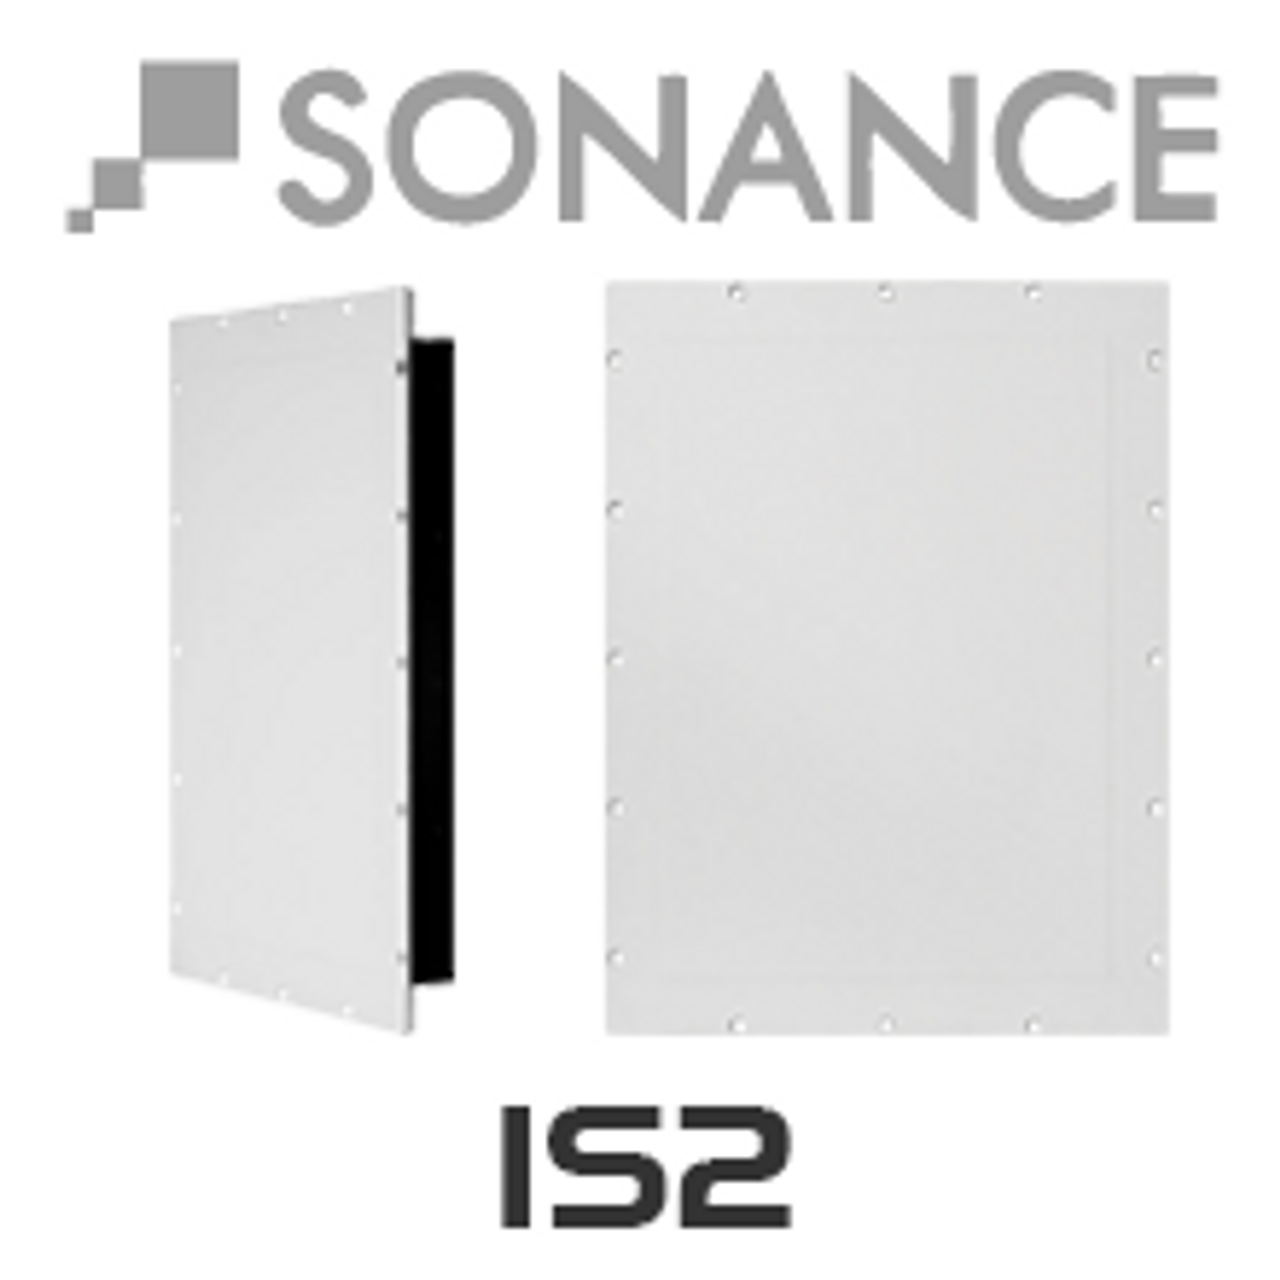 sonance speaker review